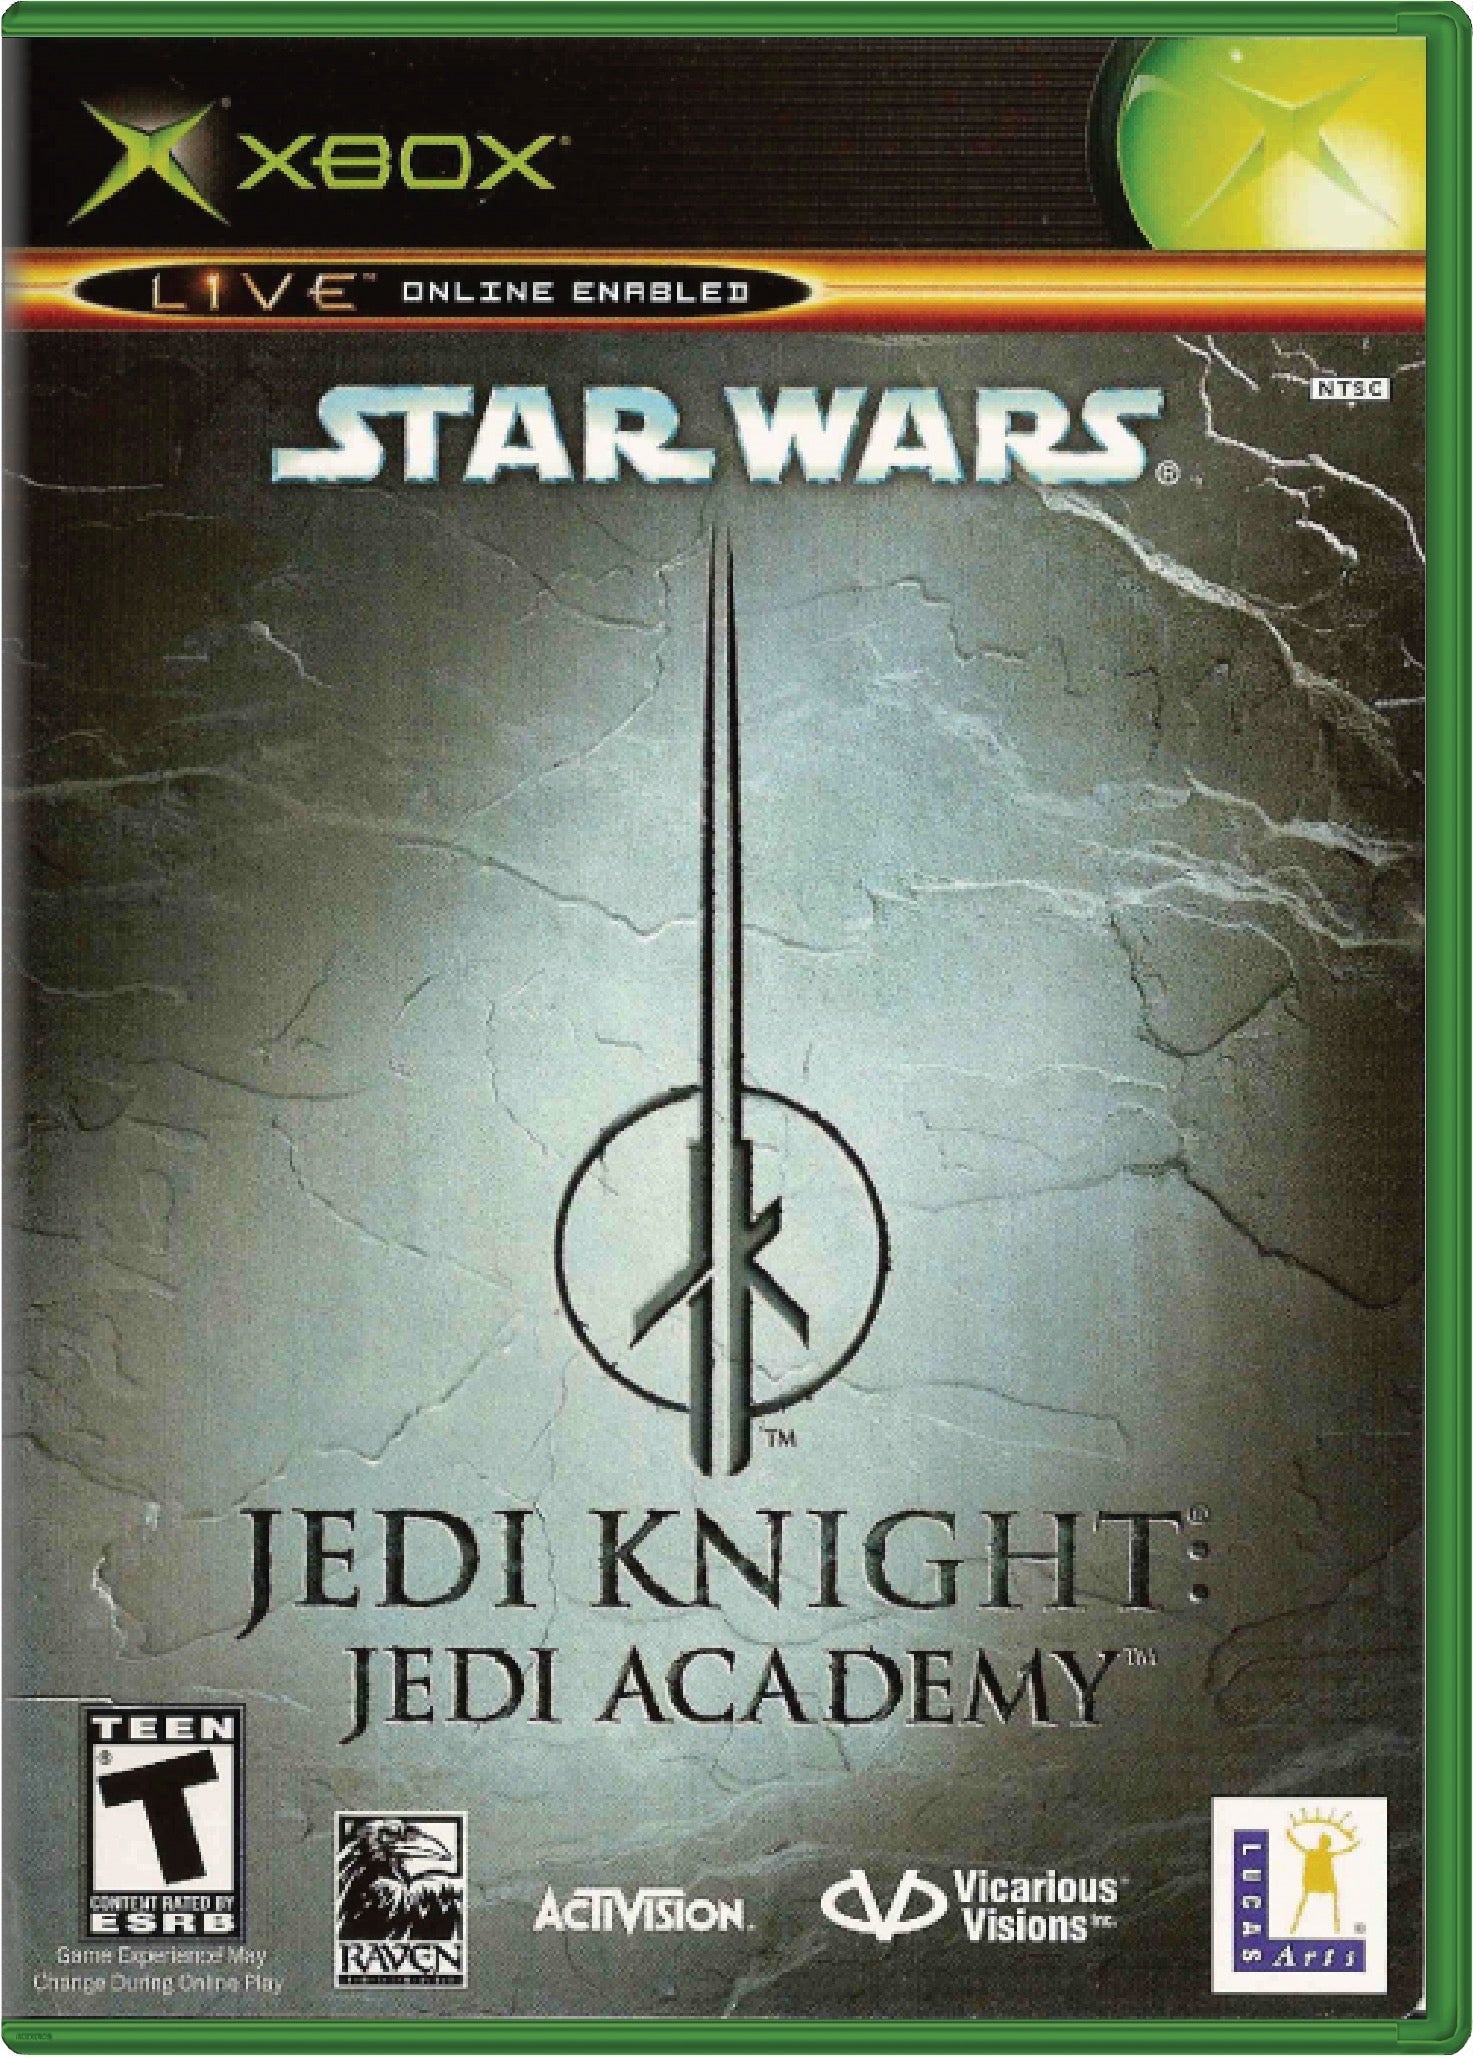 Star Wars Jedi Knight Jedi Academy Cover Art